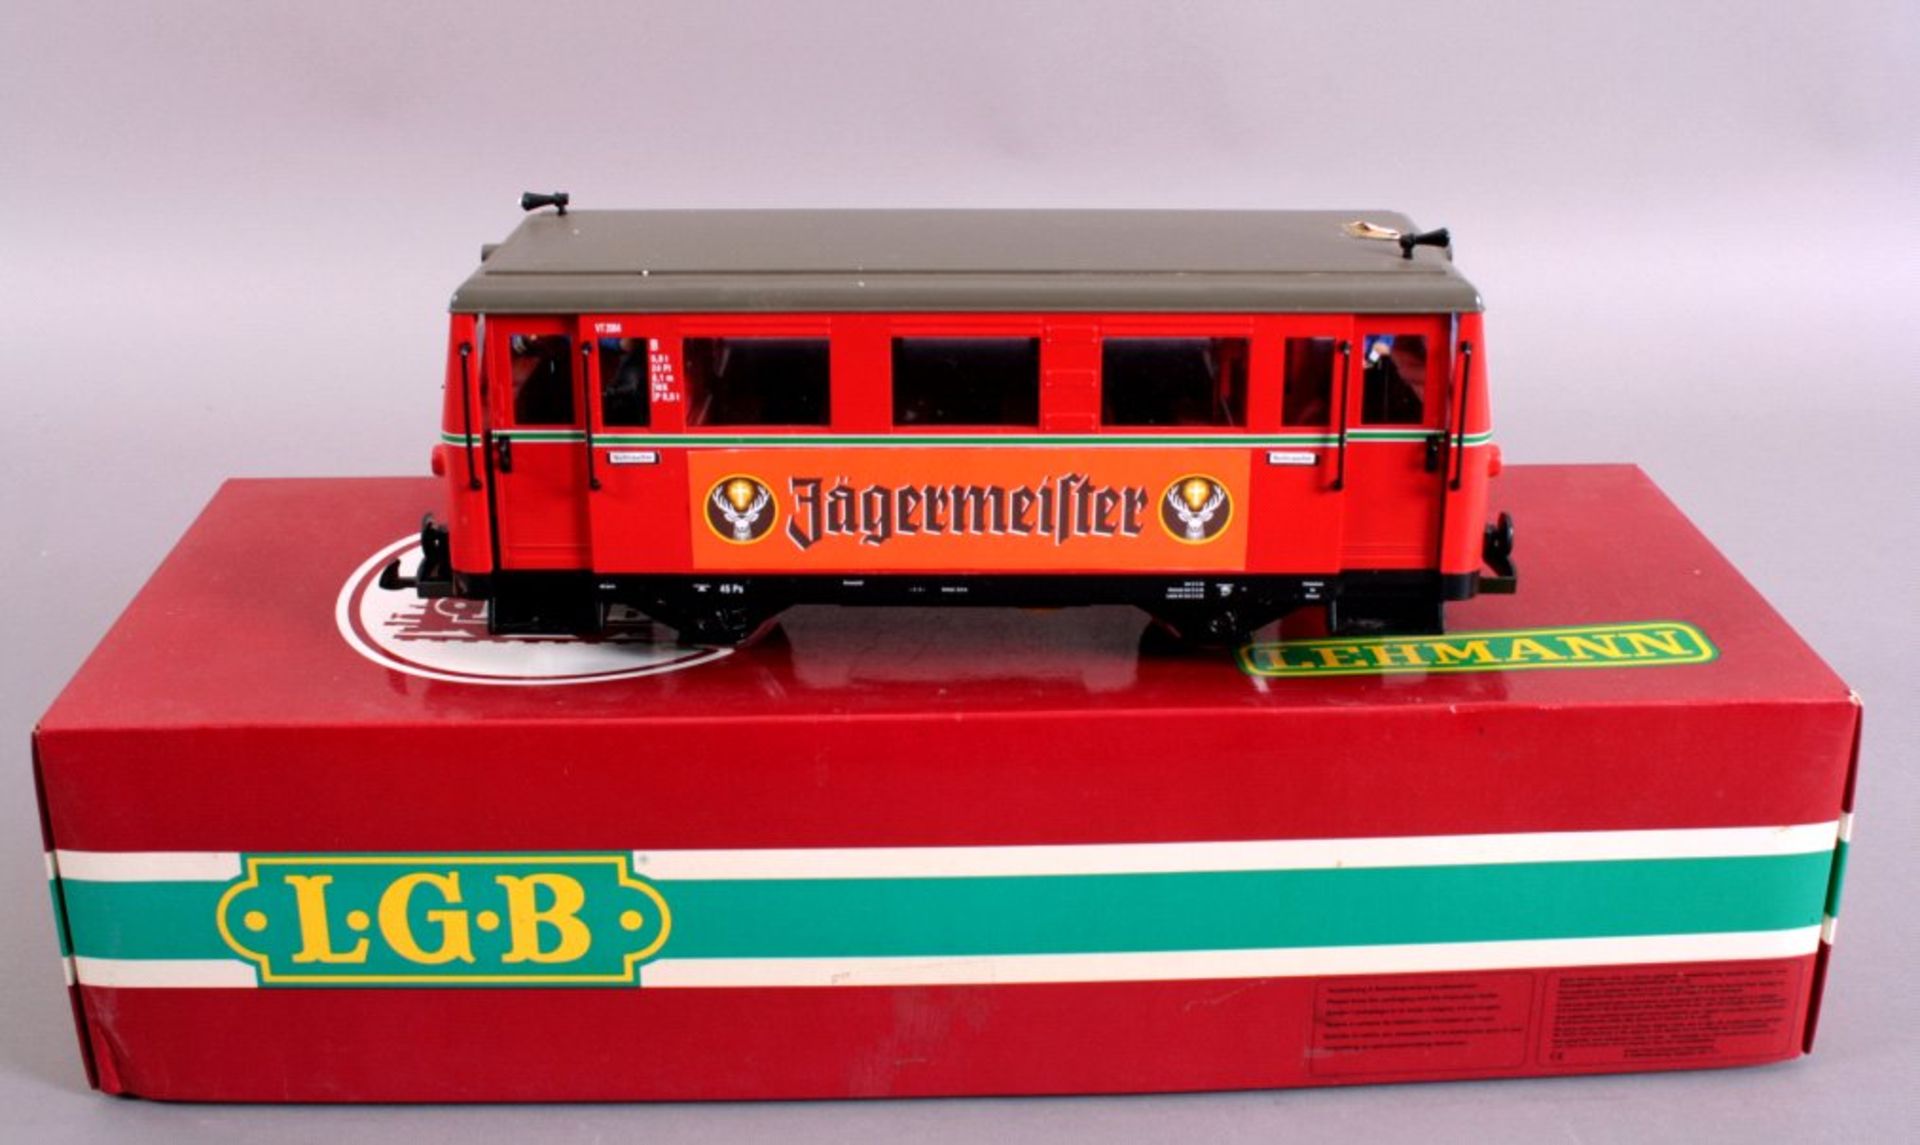 Lehmann/LGB GroßbahnTriebwagen Nr. 2064, im Original KartonMindestpreis: 120 EUR

Dieses Los wird in